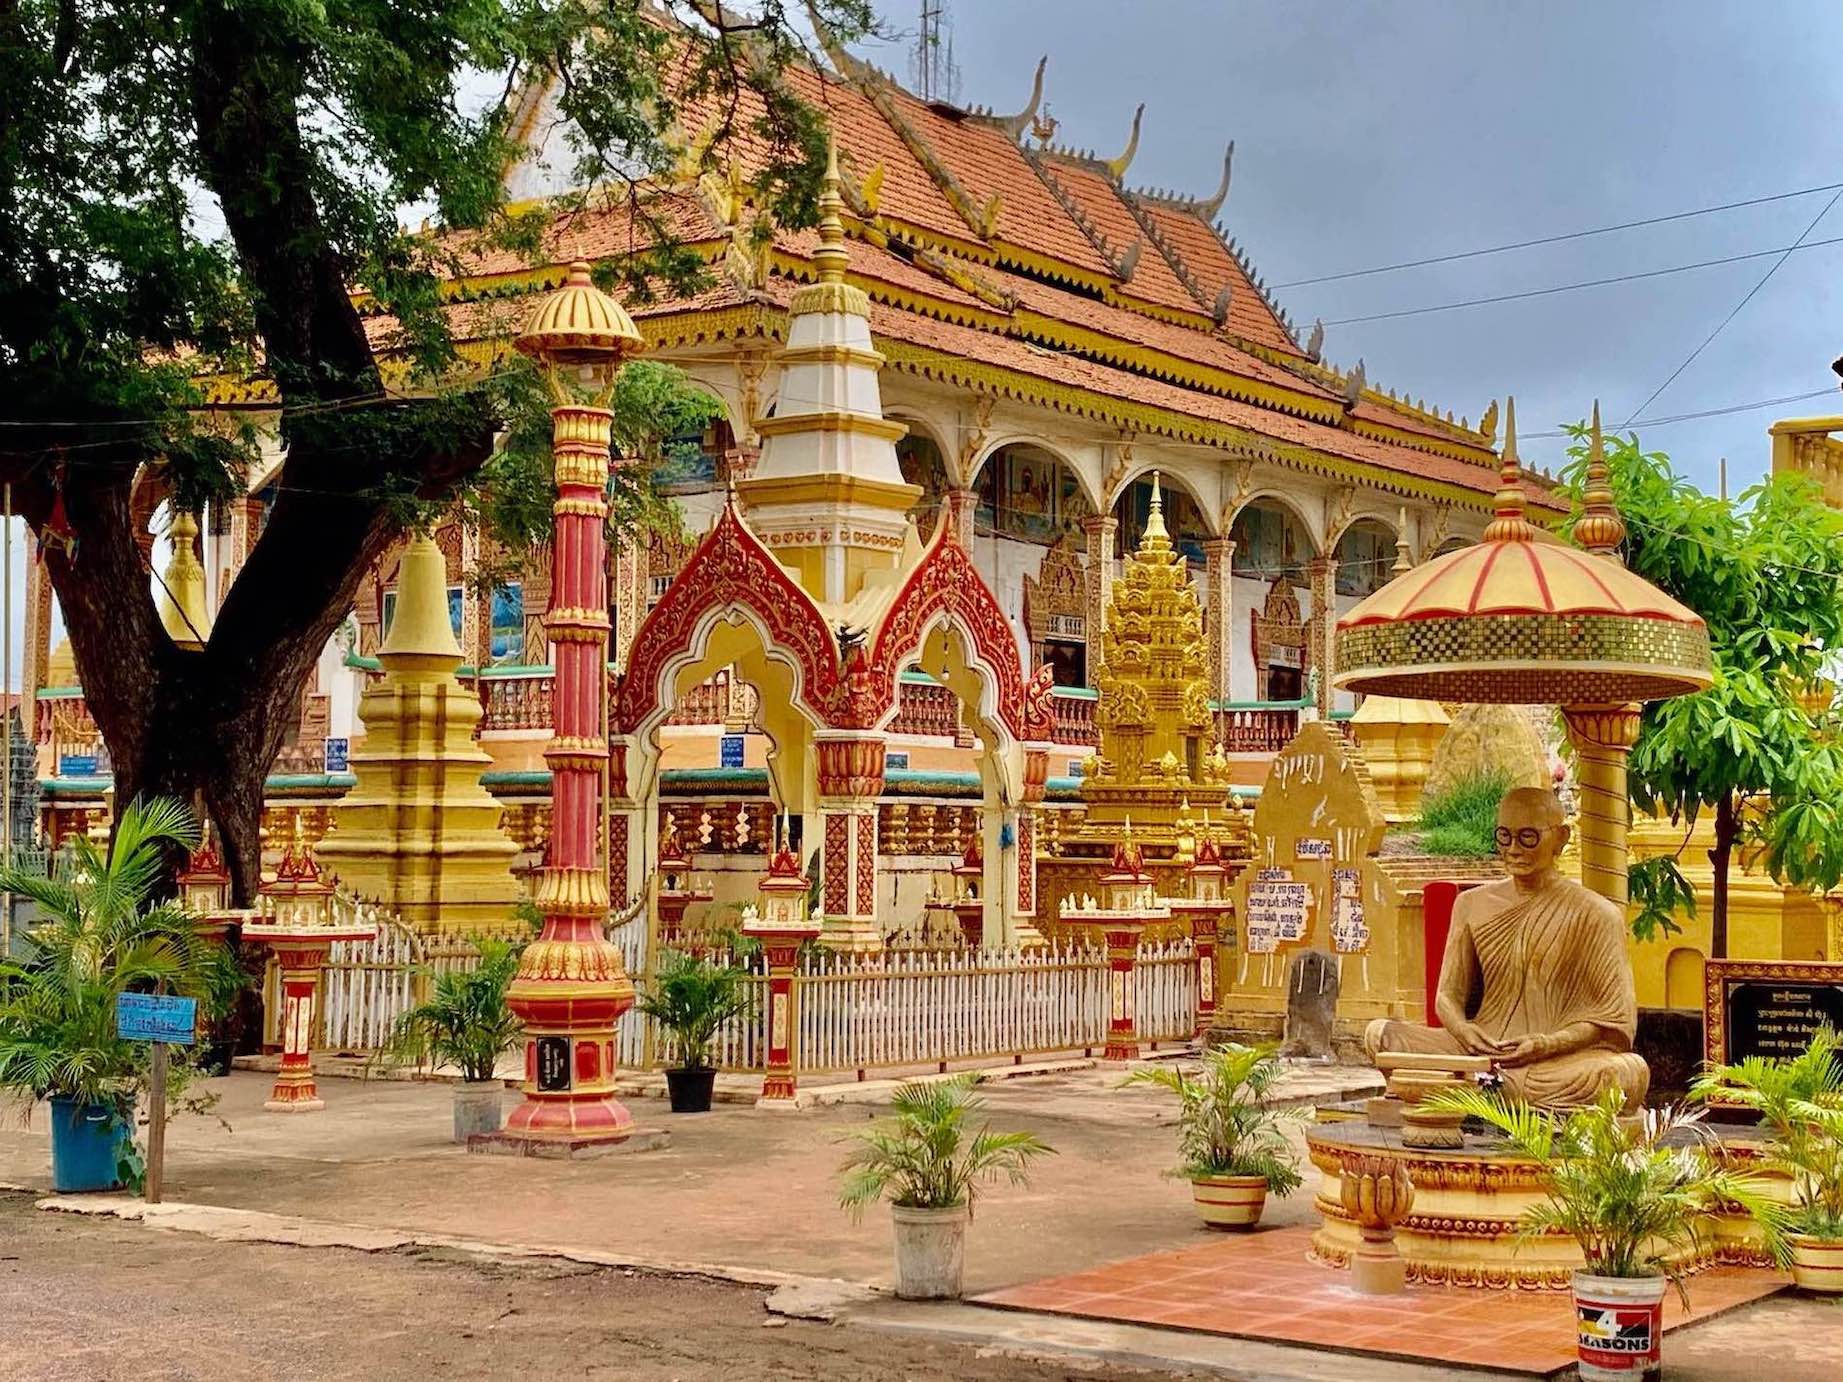 The main pagoda at Kampong Khleang Floating Village